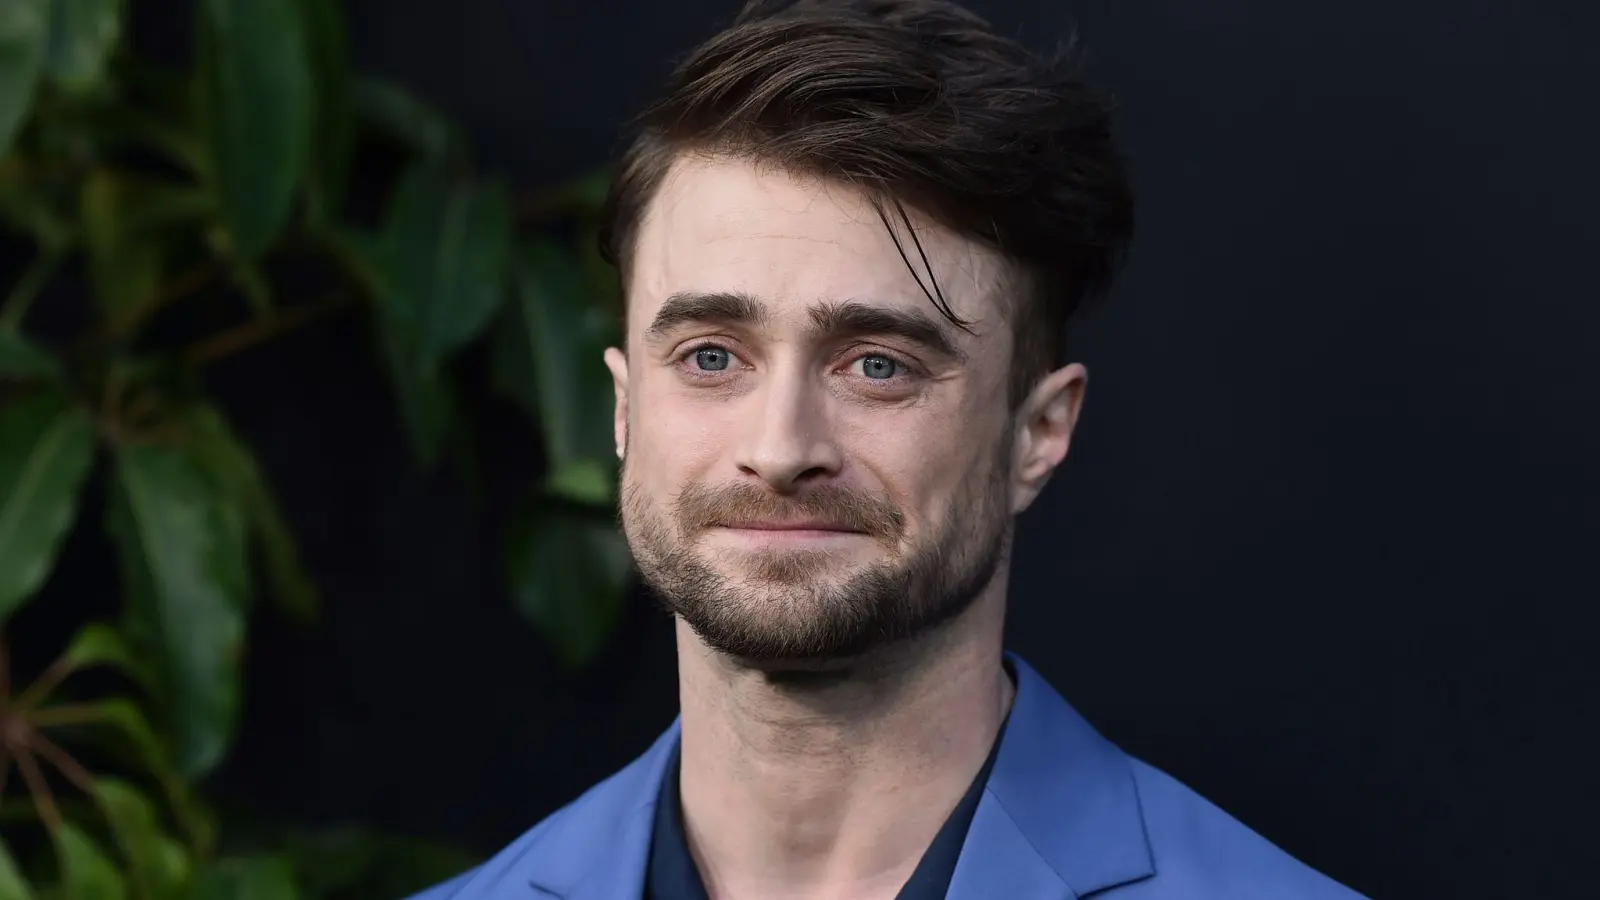 Daniel Radcliffe spielt einen US-Komiker und Grammy-Gewinner. (Foto: Jordan Strauss/Invision/AP/dpa)